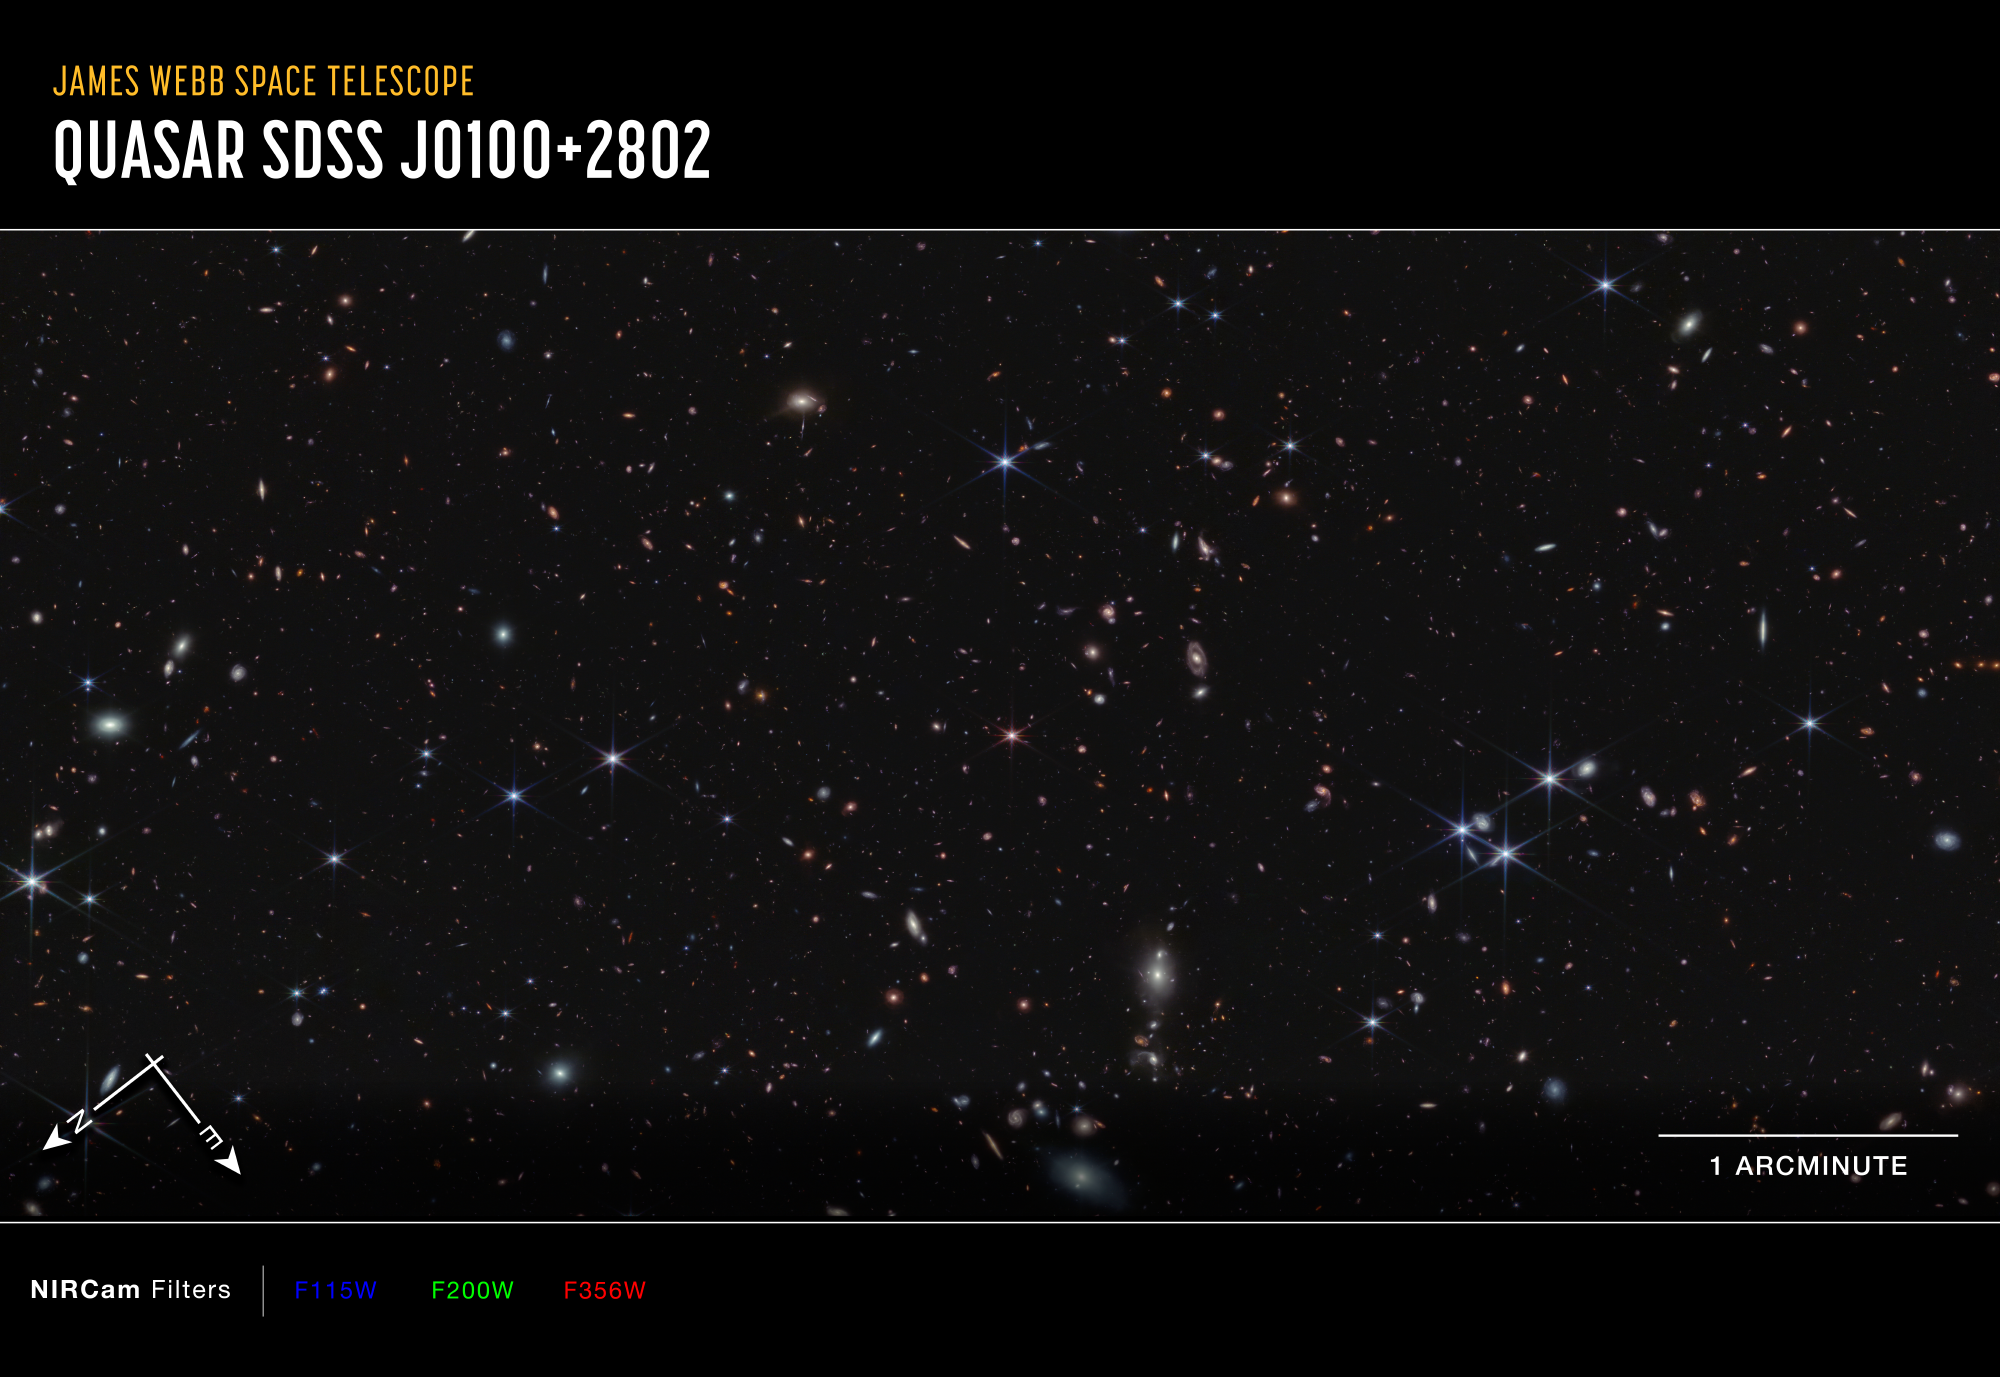 Kosmiczny Teleskop Jamesa Webba sfotografował fragment nieba (przekątna ~6,7’) w bliskiej podczerwieni (~3,5μm) zawierający ponad 20 tysięcy galaktyk - na pograniczu konstelacji Ryb i Andromedy. Astronomowie z grupy EIGER skupili się na badaniach kwazara J0100+2802 (różowy obiekt z ośmioma „spajkami” w centralnej części zdjęcia) i szczególnych 117 galaktyk, które istniały około 900 milionów lat po Wielkim Wybuchu. Astronomowie odkryli, że te galaktyki jonizowały otaczający gaz – sprawiając, że stał się przeźroczysty. Materiał obserwacyjny zebrany przez Teleskop Webba z kamerą NIRCam podczas 9,7-godzinnego naświetlania tego obszaru nieba (zdjęcia w trzech filtrach + spektroskopia) pozwolił wyznaczyć promień tych przeźroczystych „bąbli” wokół galaktyk na około 2 miliony l.św. Z czasem te obszary powiększały się i łączyły - i sprawiły, że w końcu Wszechświat stał się przeźroczysty. Te wyniki grupy astronomów EIGER zapewniły istotny wgląd w erę rejonizacji. Źródło: NASA, ESA, CSA, Simon Lilly (ETH Zürich), Daichi Kashino (Nagoya University), Jorryt Matthee (ETH Zürich), Christina Eilers (MIT), Rob Simcoe (MIT), Rongmon Bordoloi (NCSU), Ruari Mackenzie (ETH Zürich); Image Processing: Alyssa Pagan (STScI), Ruari Macke